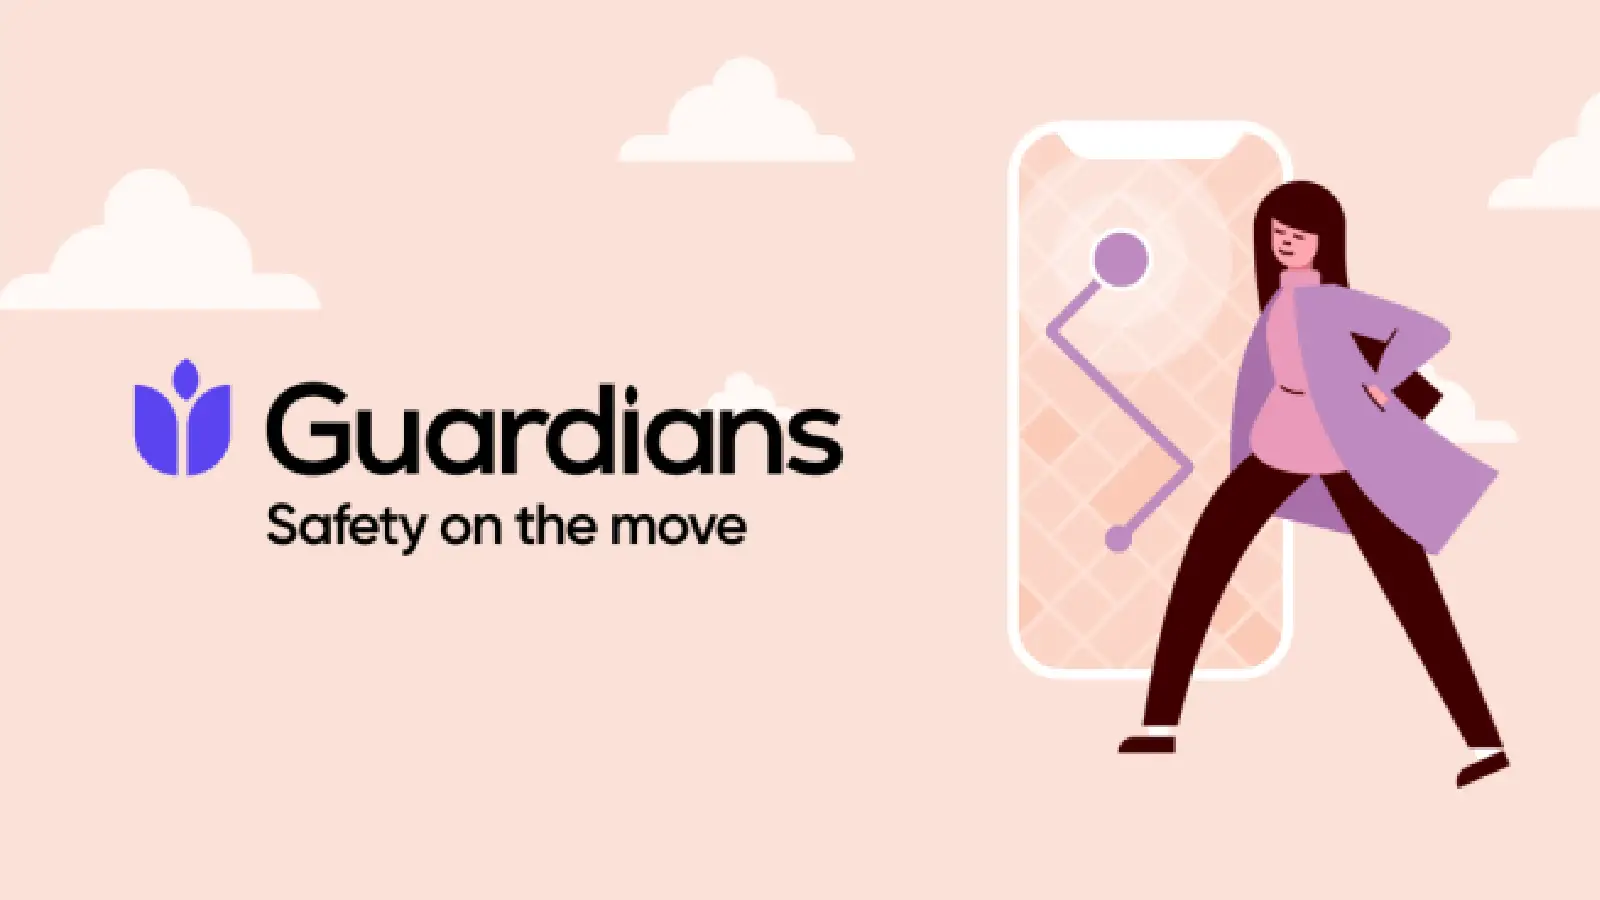 Приложение безопасности Truecaller's Guardians превысило 1 миллион загрузок по всему миру